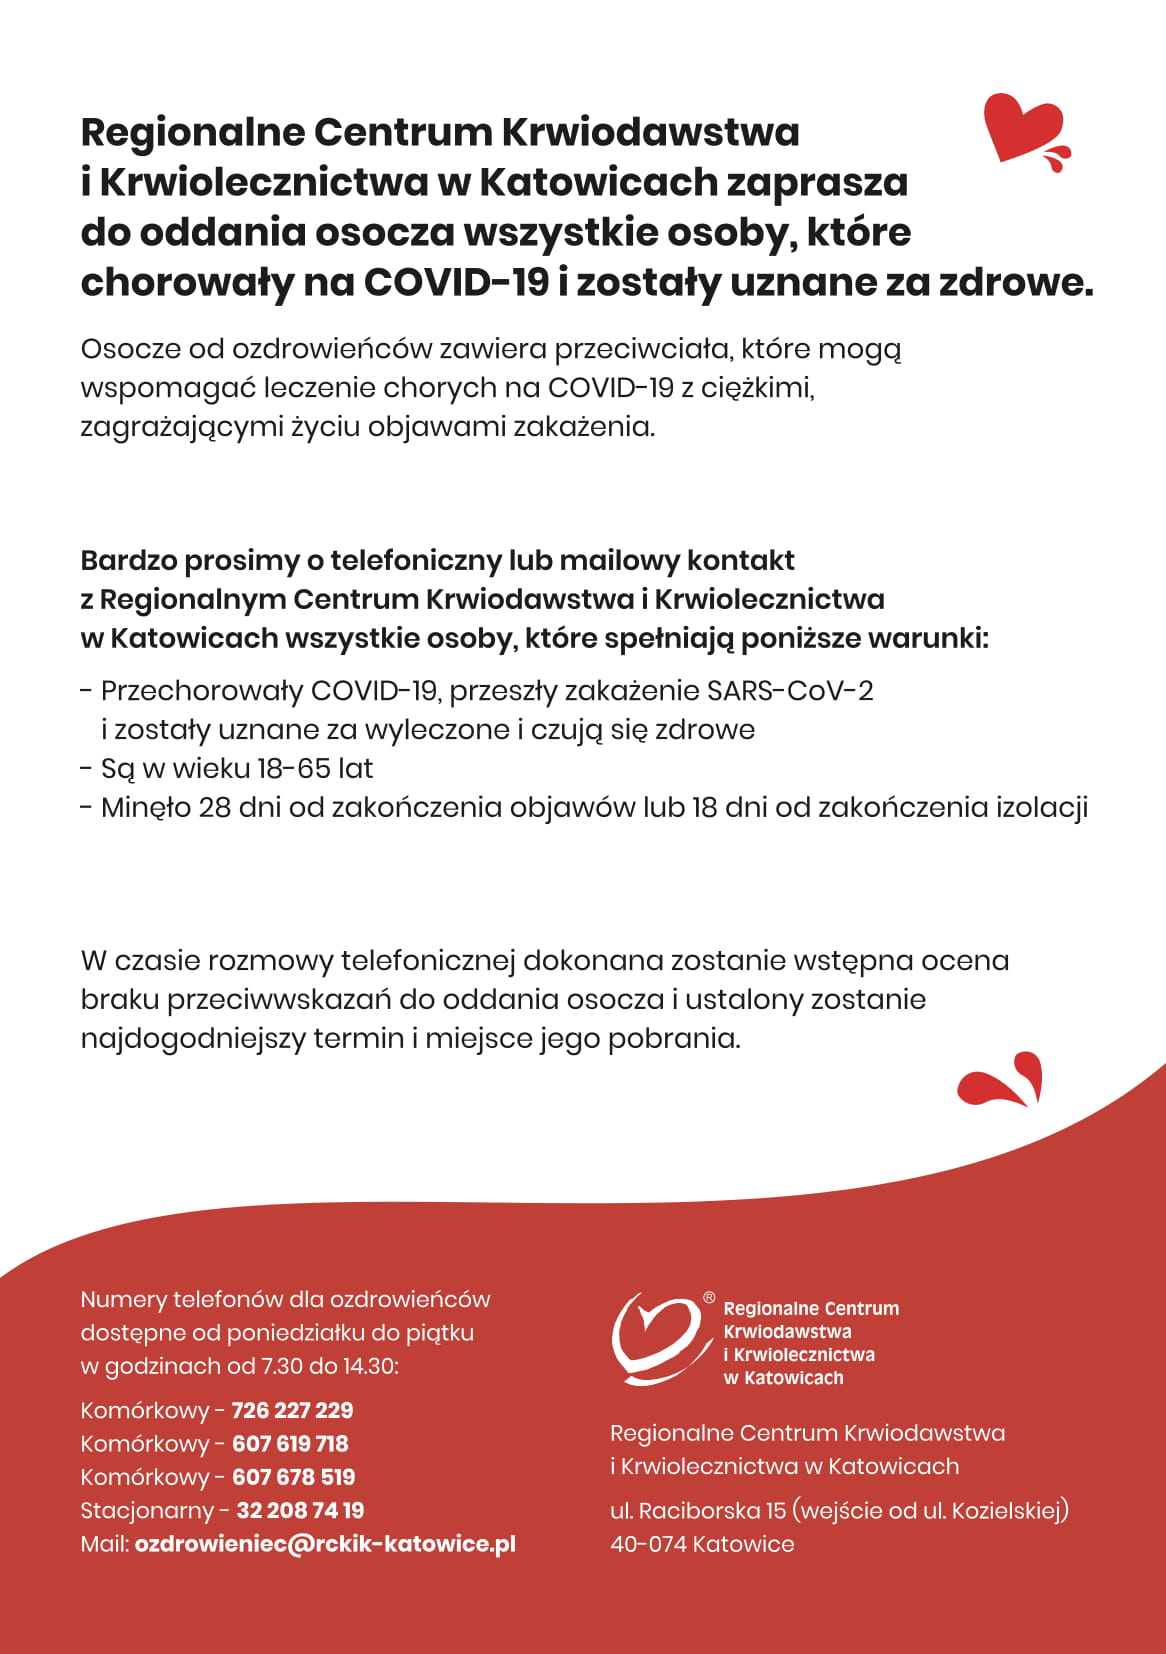 Regionalne Centrum Krwiodawstwa i Krwiolecznictwa Katowice zaprasza do oddania osocza.